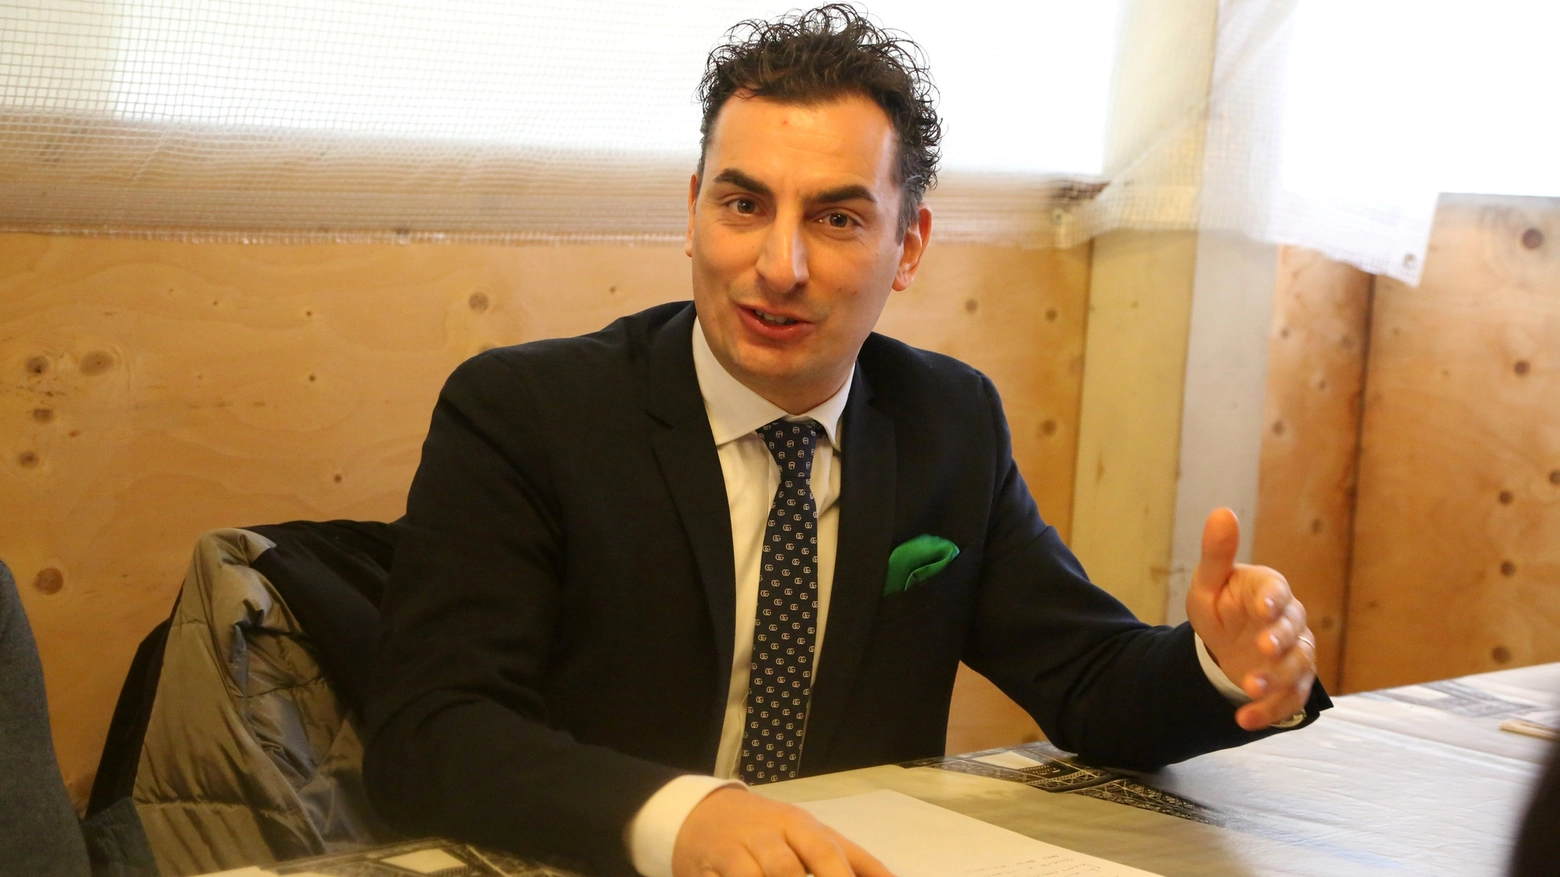 Jacopo Morrone, eletto alla Camera per la Lega Nord (Foto Ravaglia)